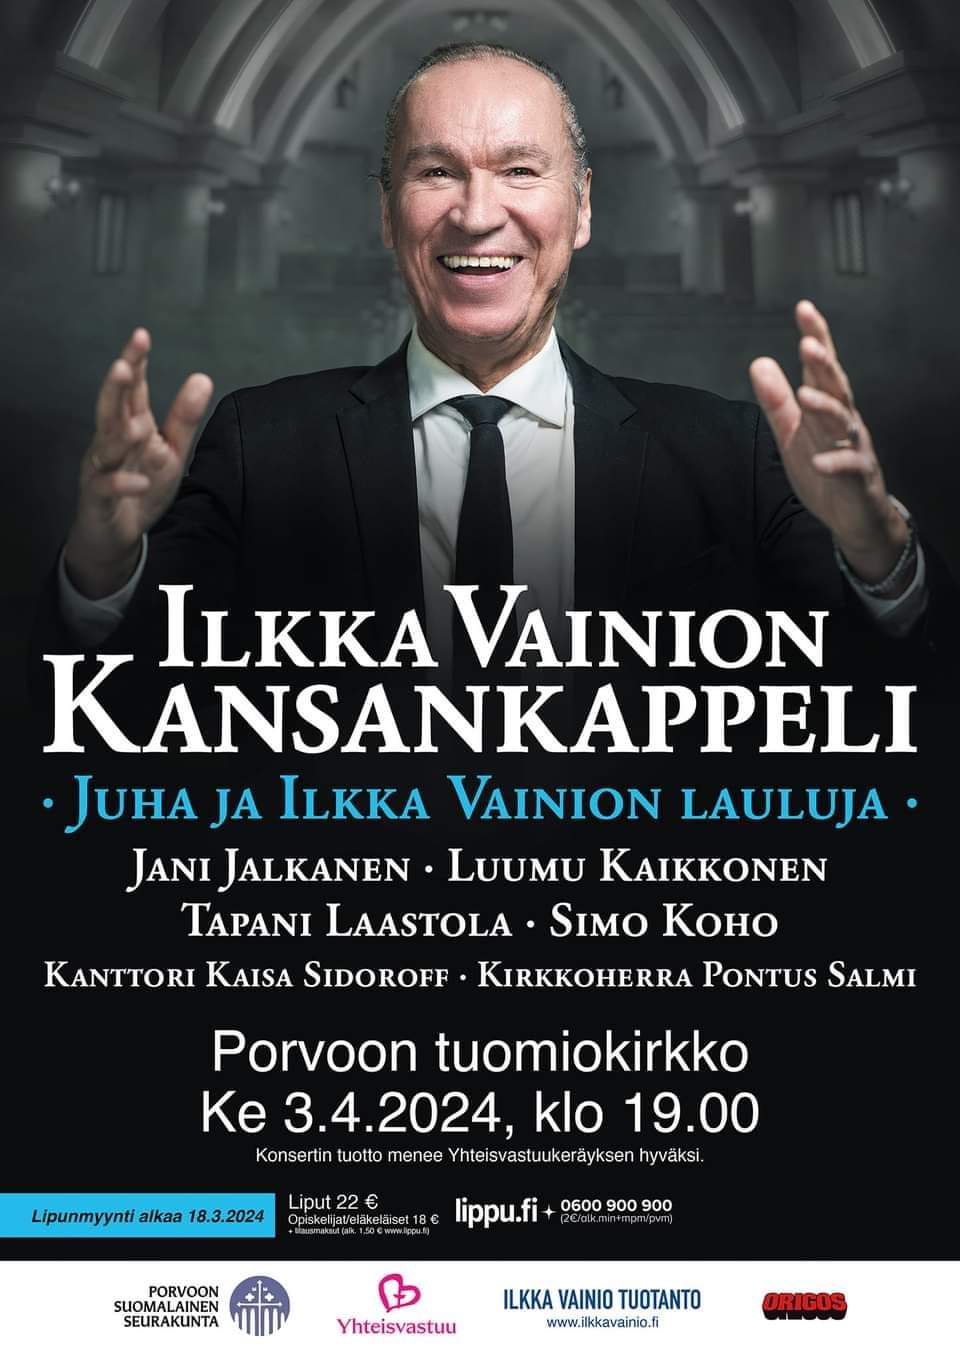 Kuvassa Ilkka Vainio mustassa puvussa, valkoisessa kauluspaidassa ja mustassa kravatissa. Alla tekstissä kaikki konsertin esiintyjät sekä konserttipaikka- ja lipunmyyntitiedot